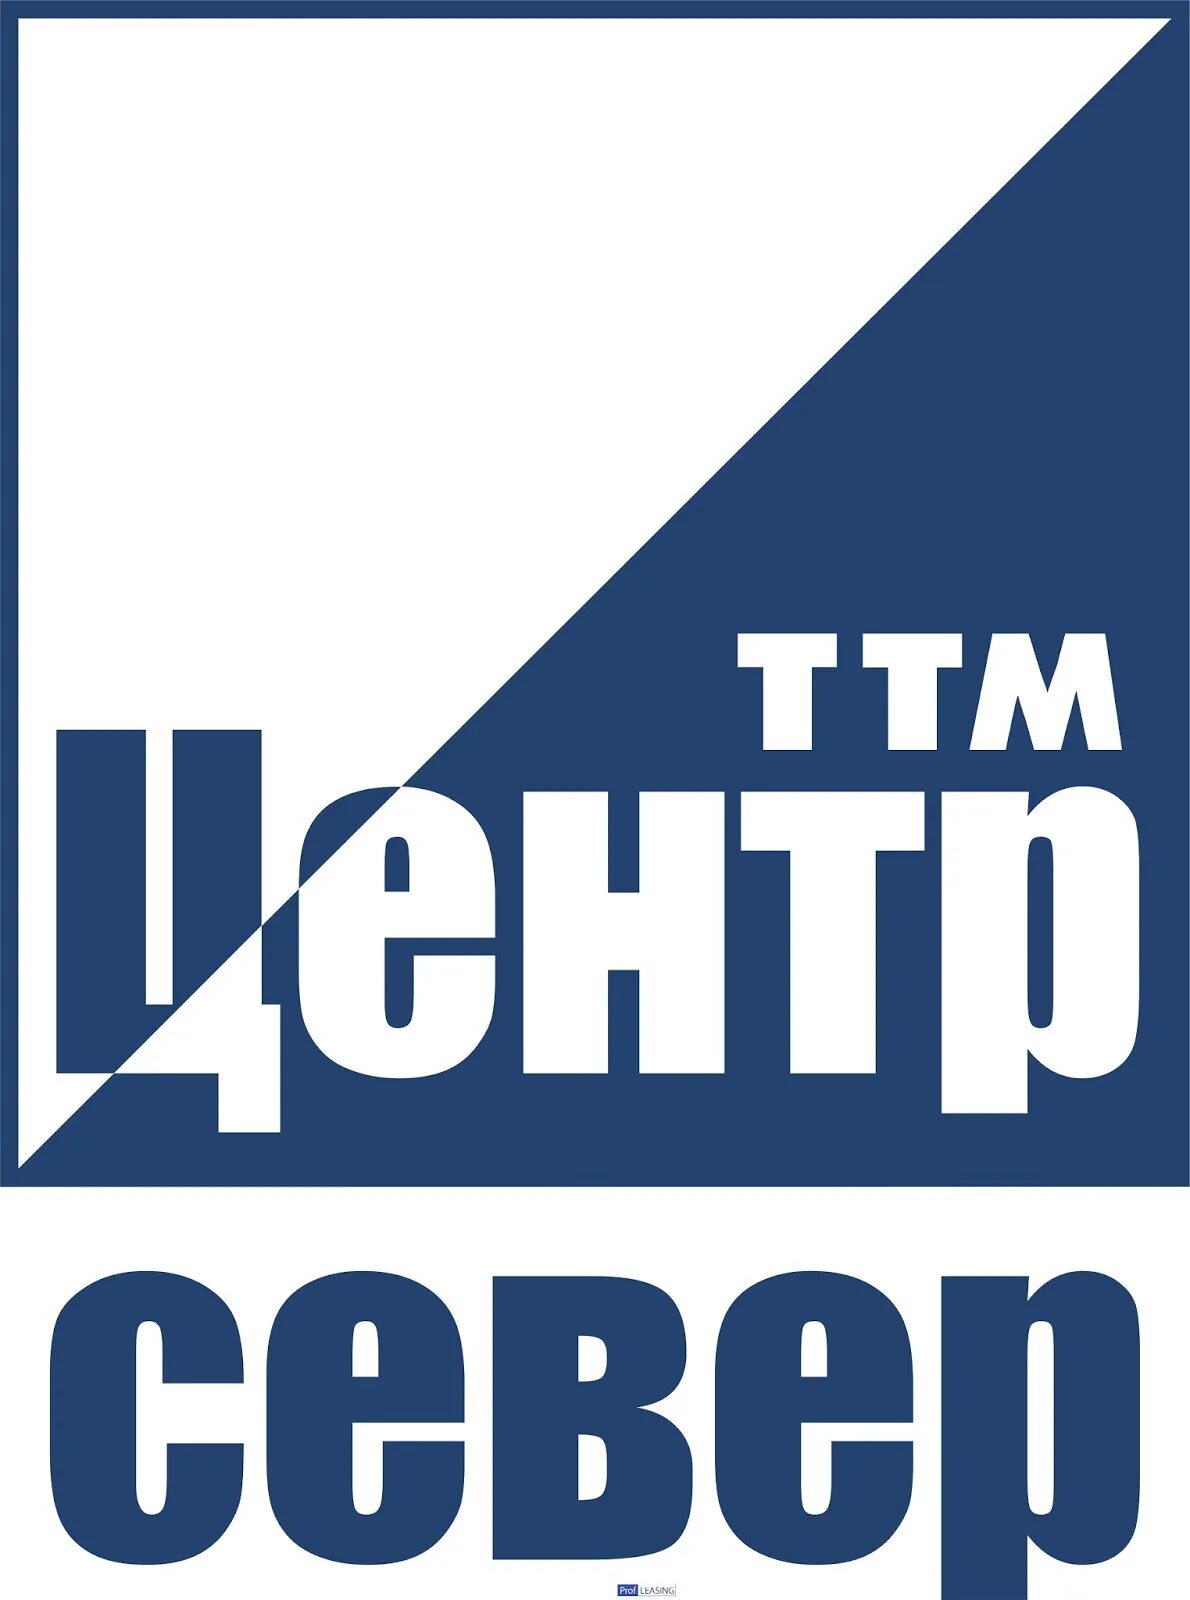 Ооо ттм. ТТМ центр. ТТМ центр логотип. ЦТТМ логотип.